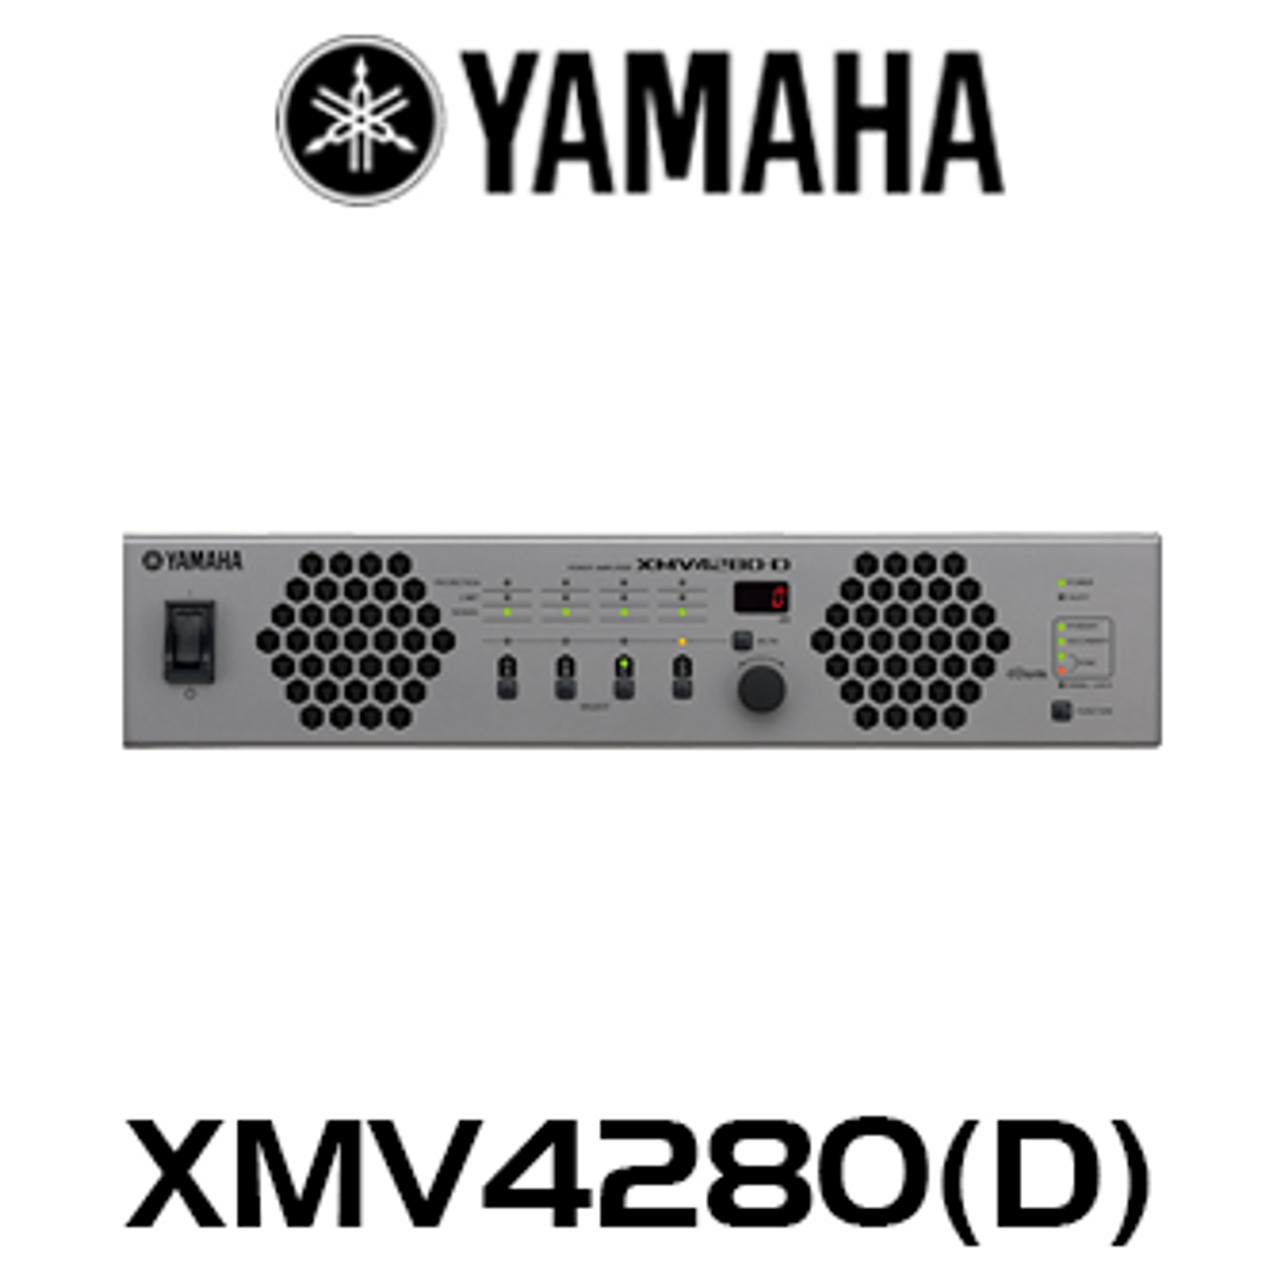 Yamaha XMV4280(D) 4 x 280W 8 ohm 70/100W Power Amplifier